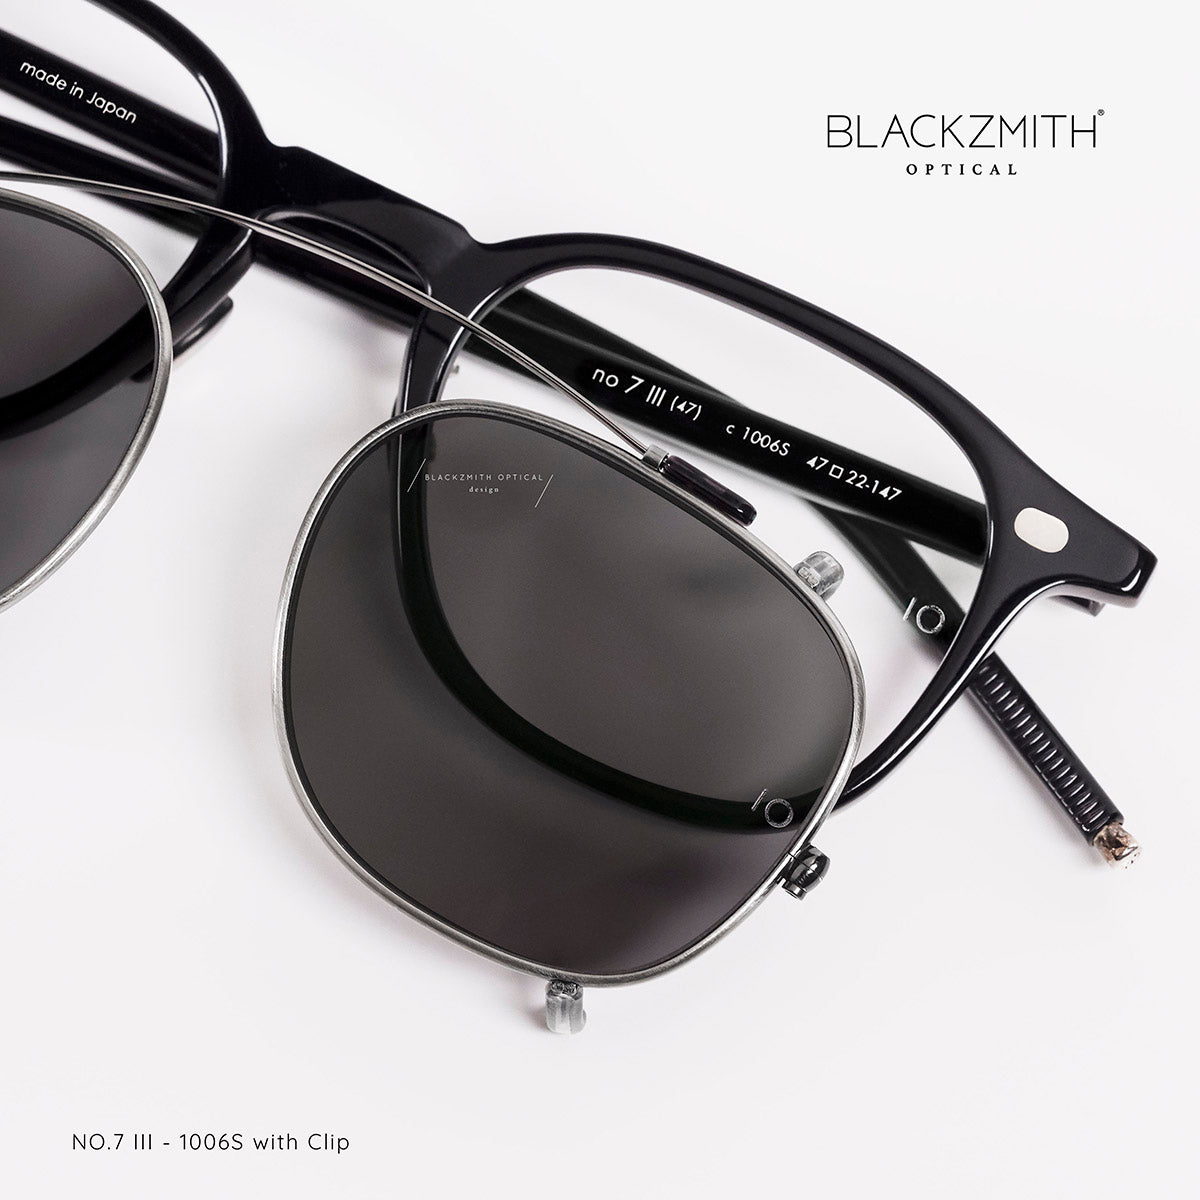 10 Eyevan - NO.7 III 1006S (47)【New】 – BLACKZMITH Optical